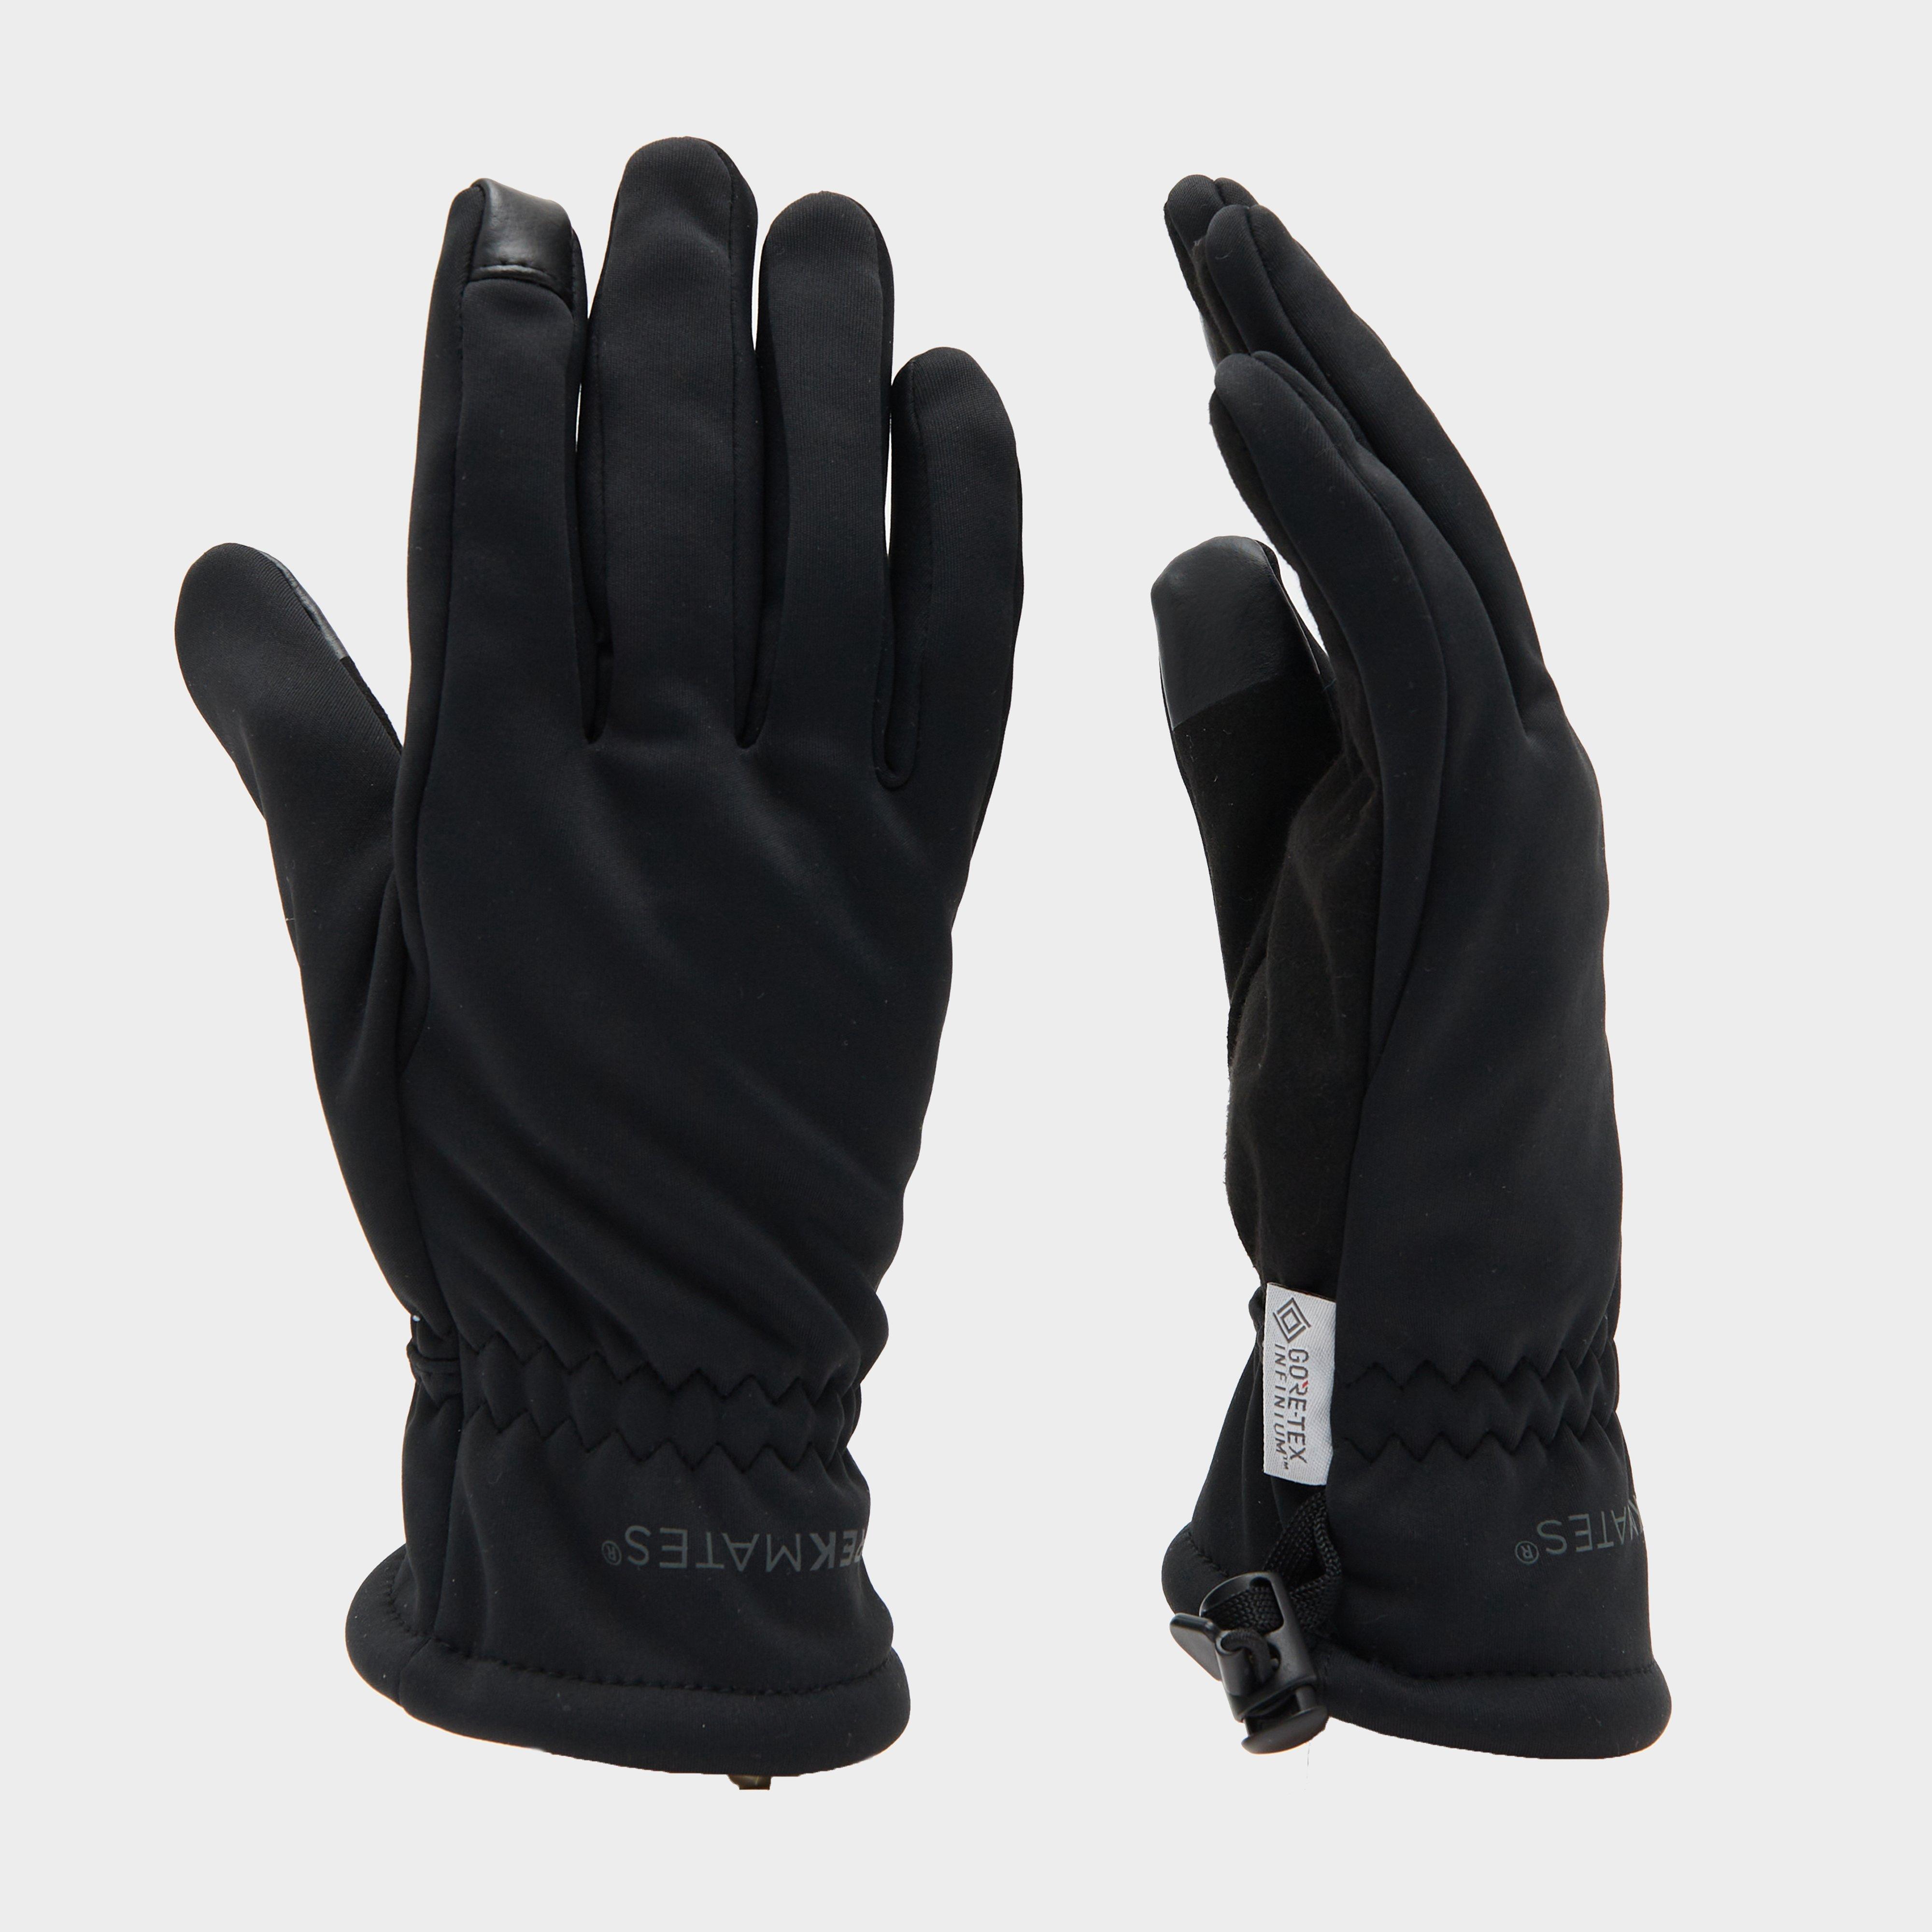 Trekmates Mens Rigg Windstopper Glove - Black/black  Black/black